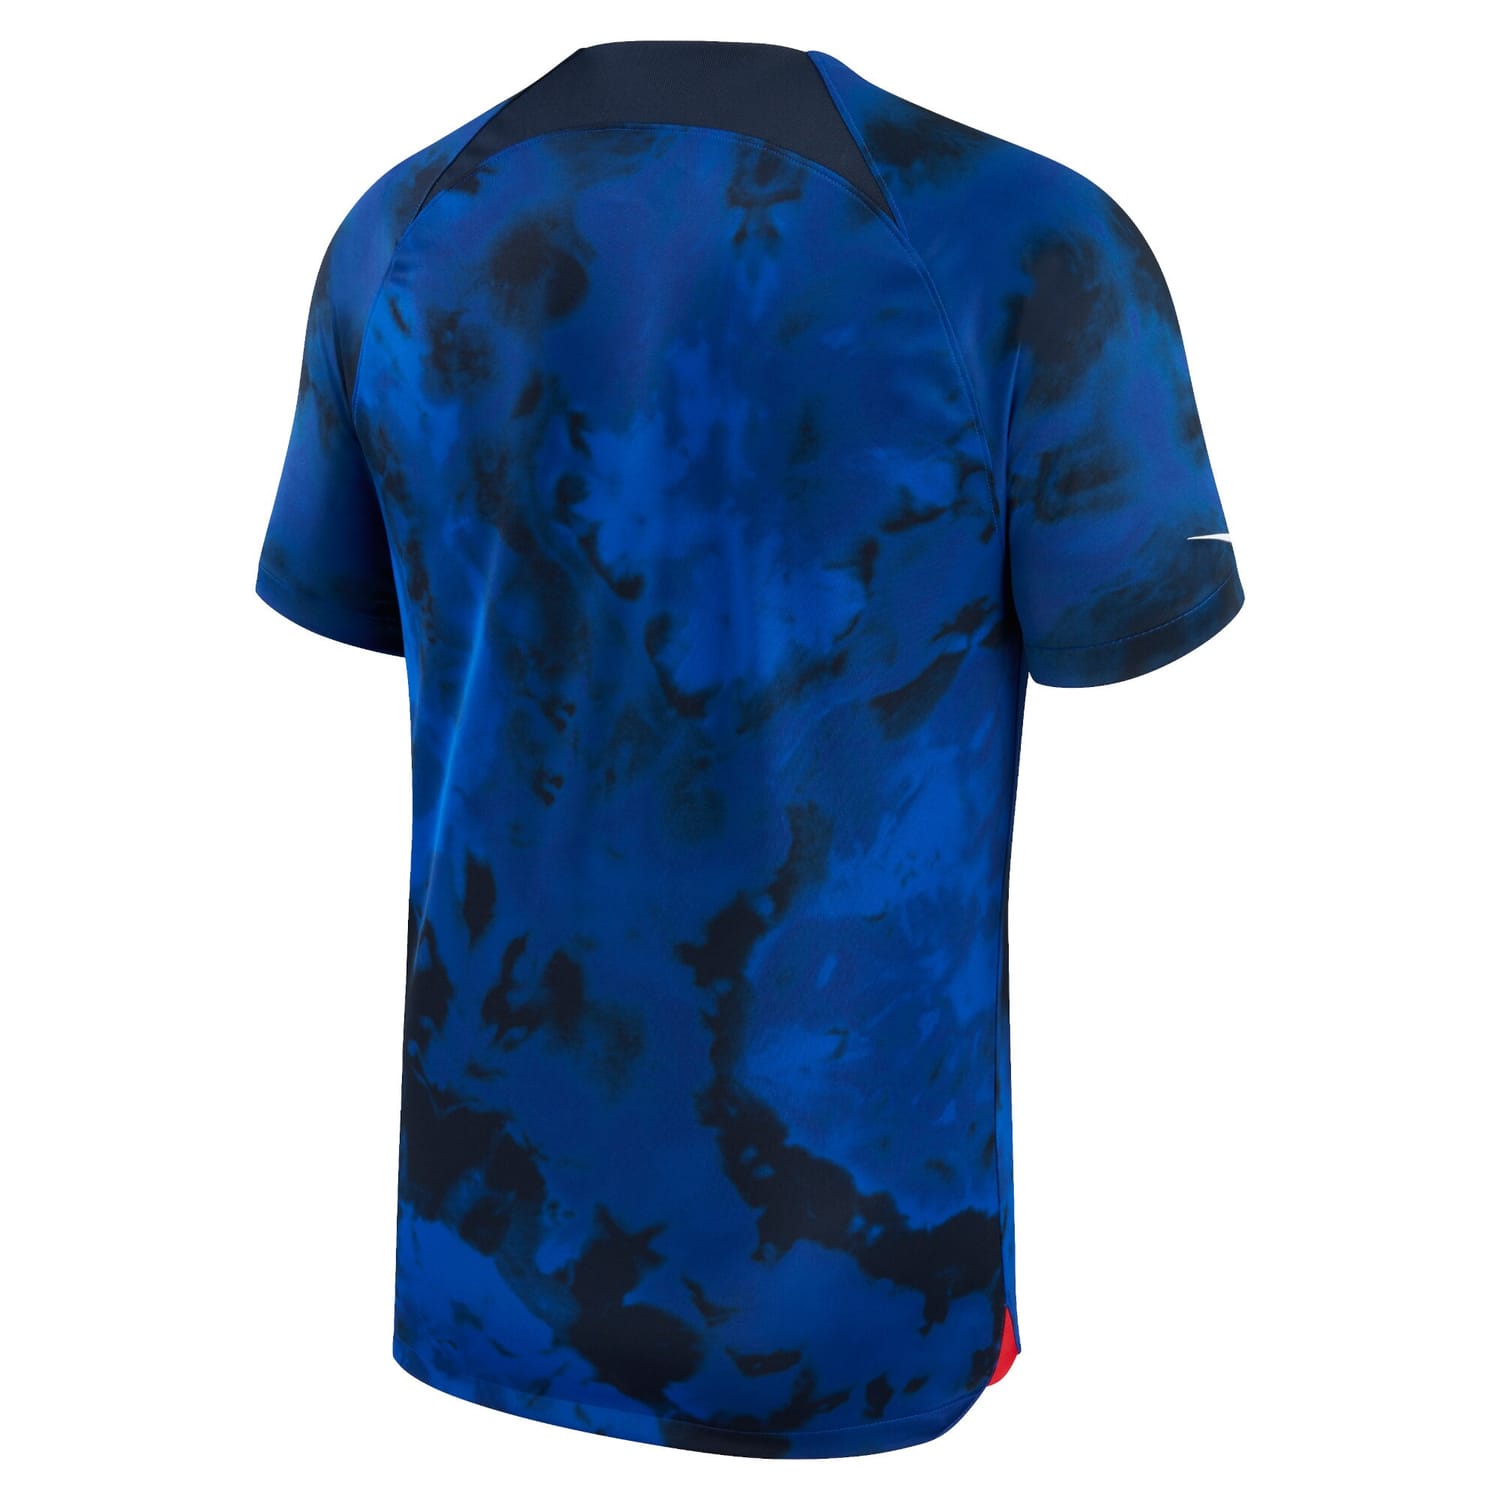 USMNT Away Jersey Shirt Blue 2022-23 for Men